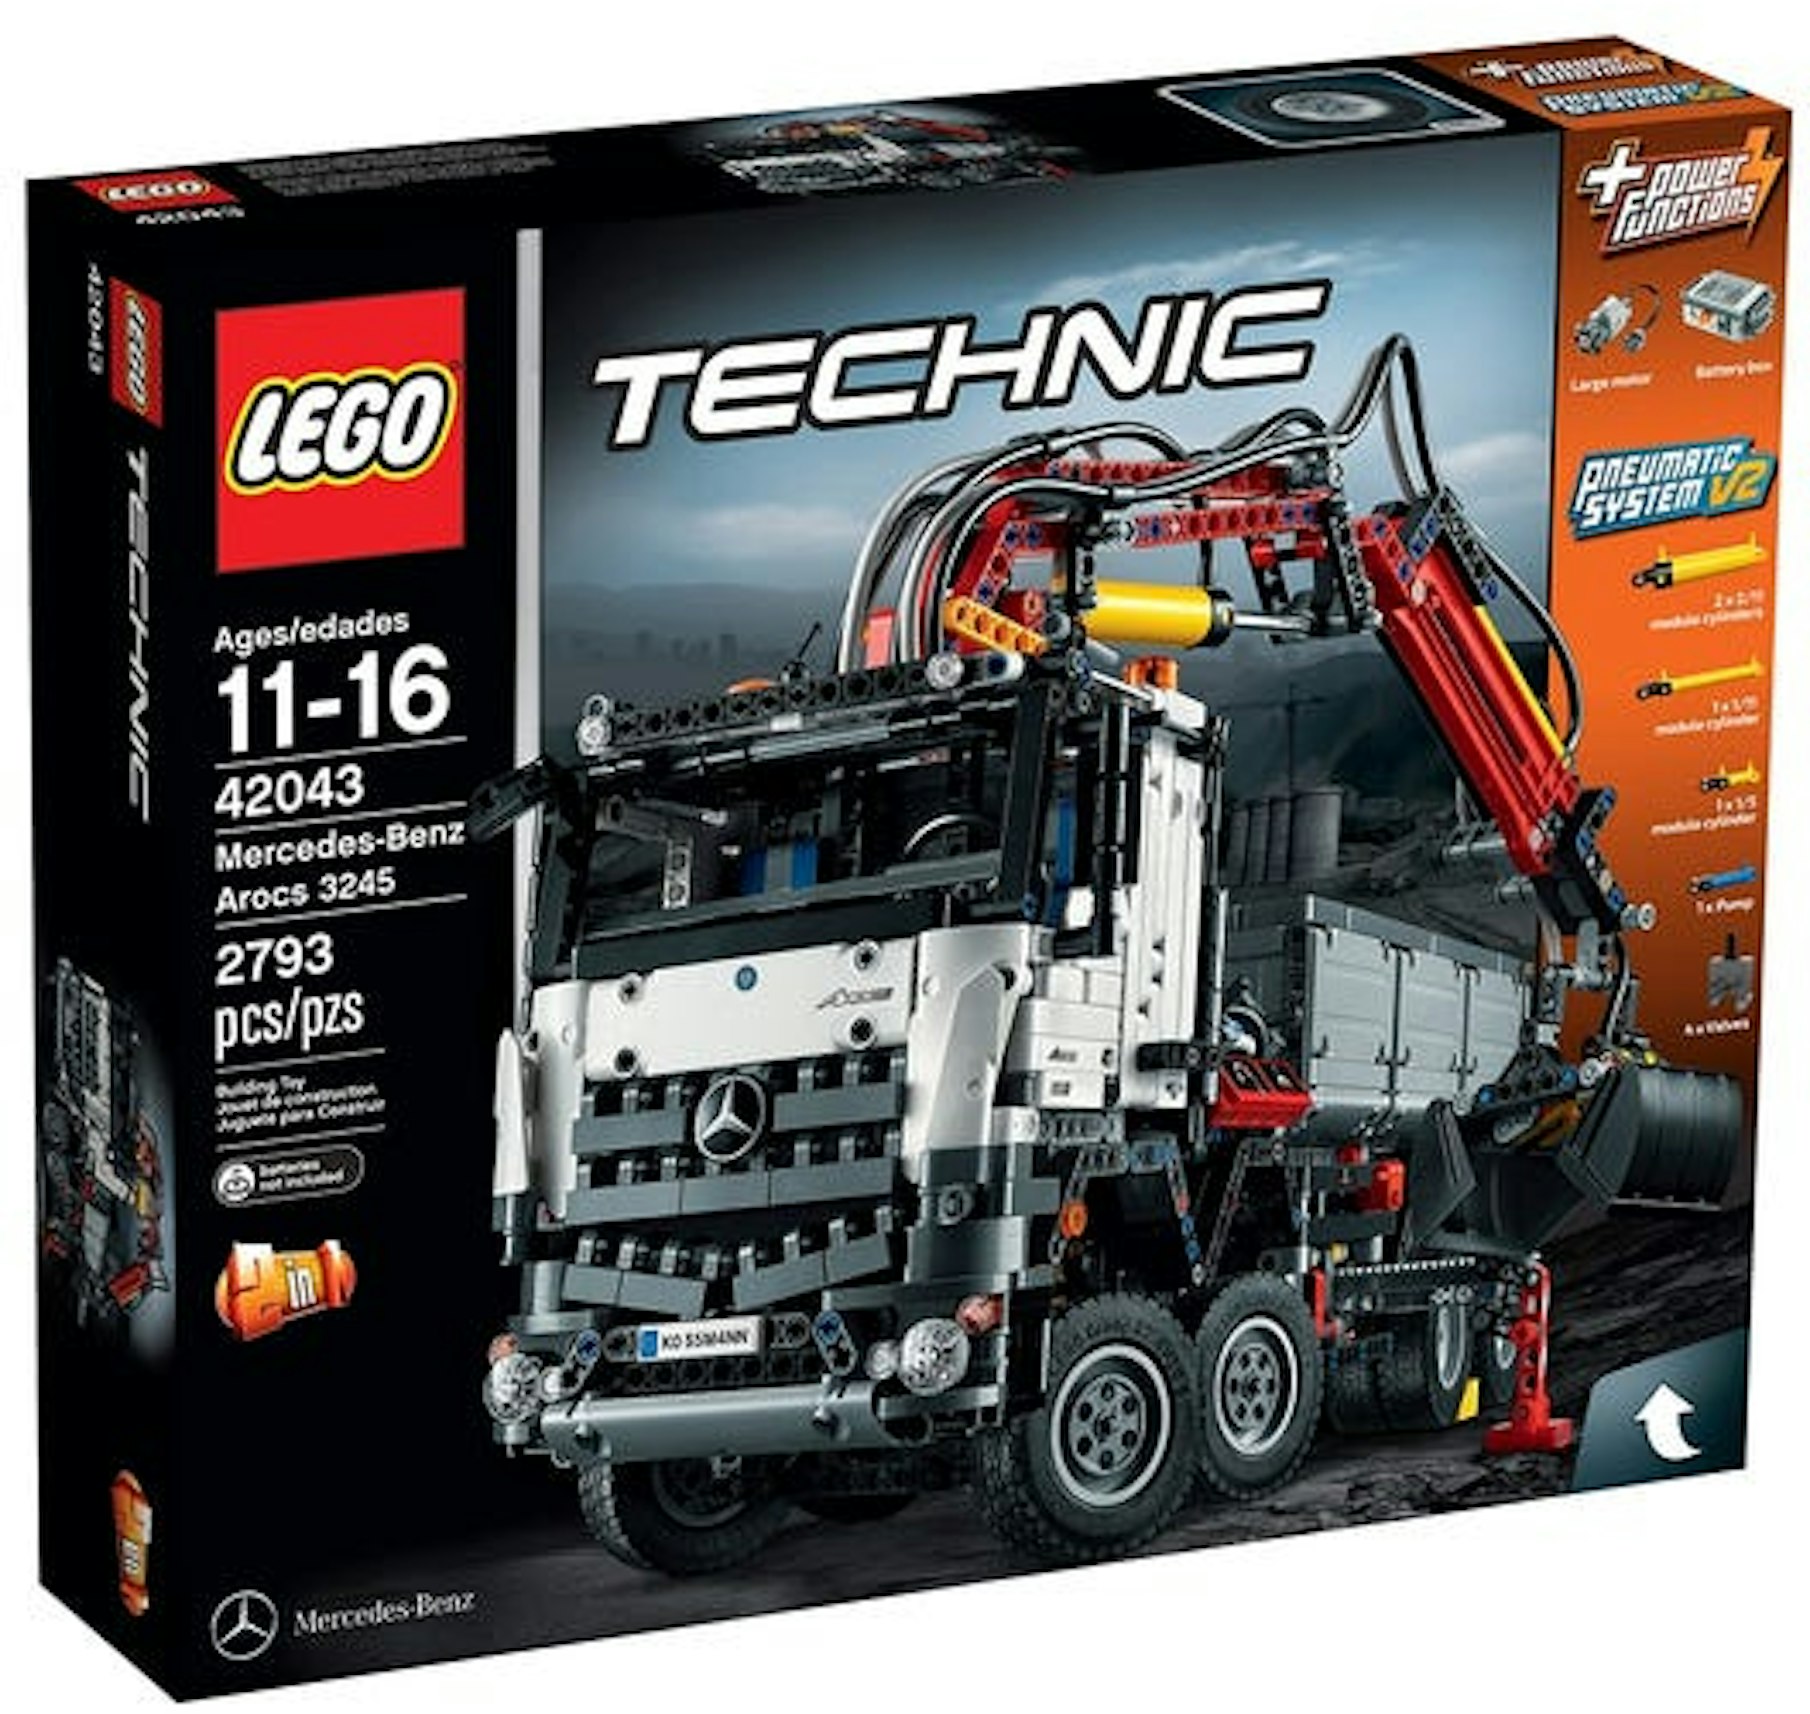 LEGO Technic Arocs Set 42043 - US